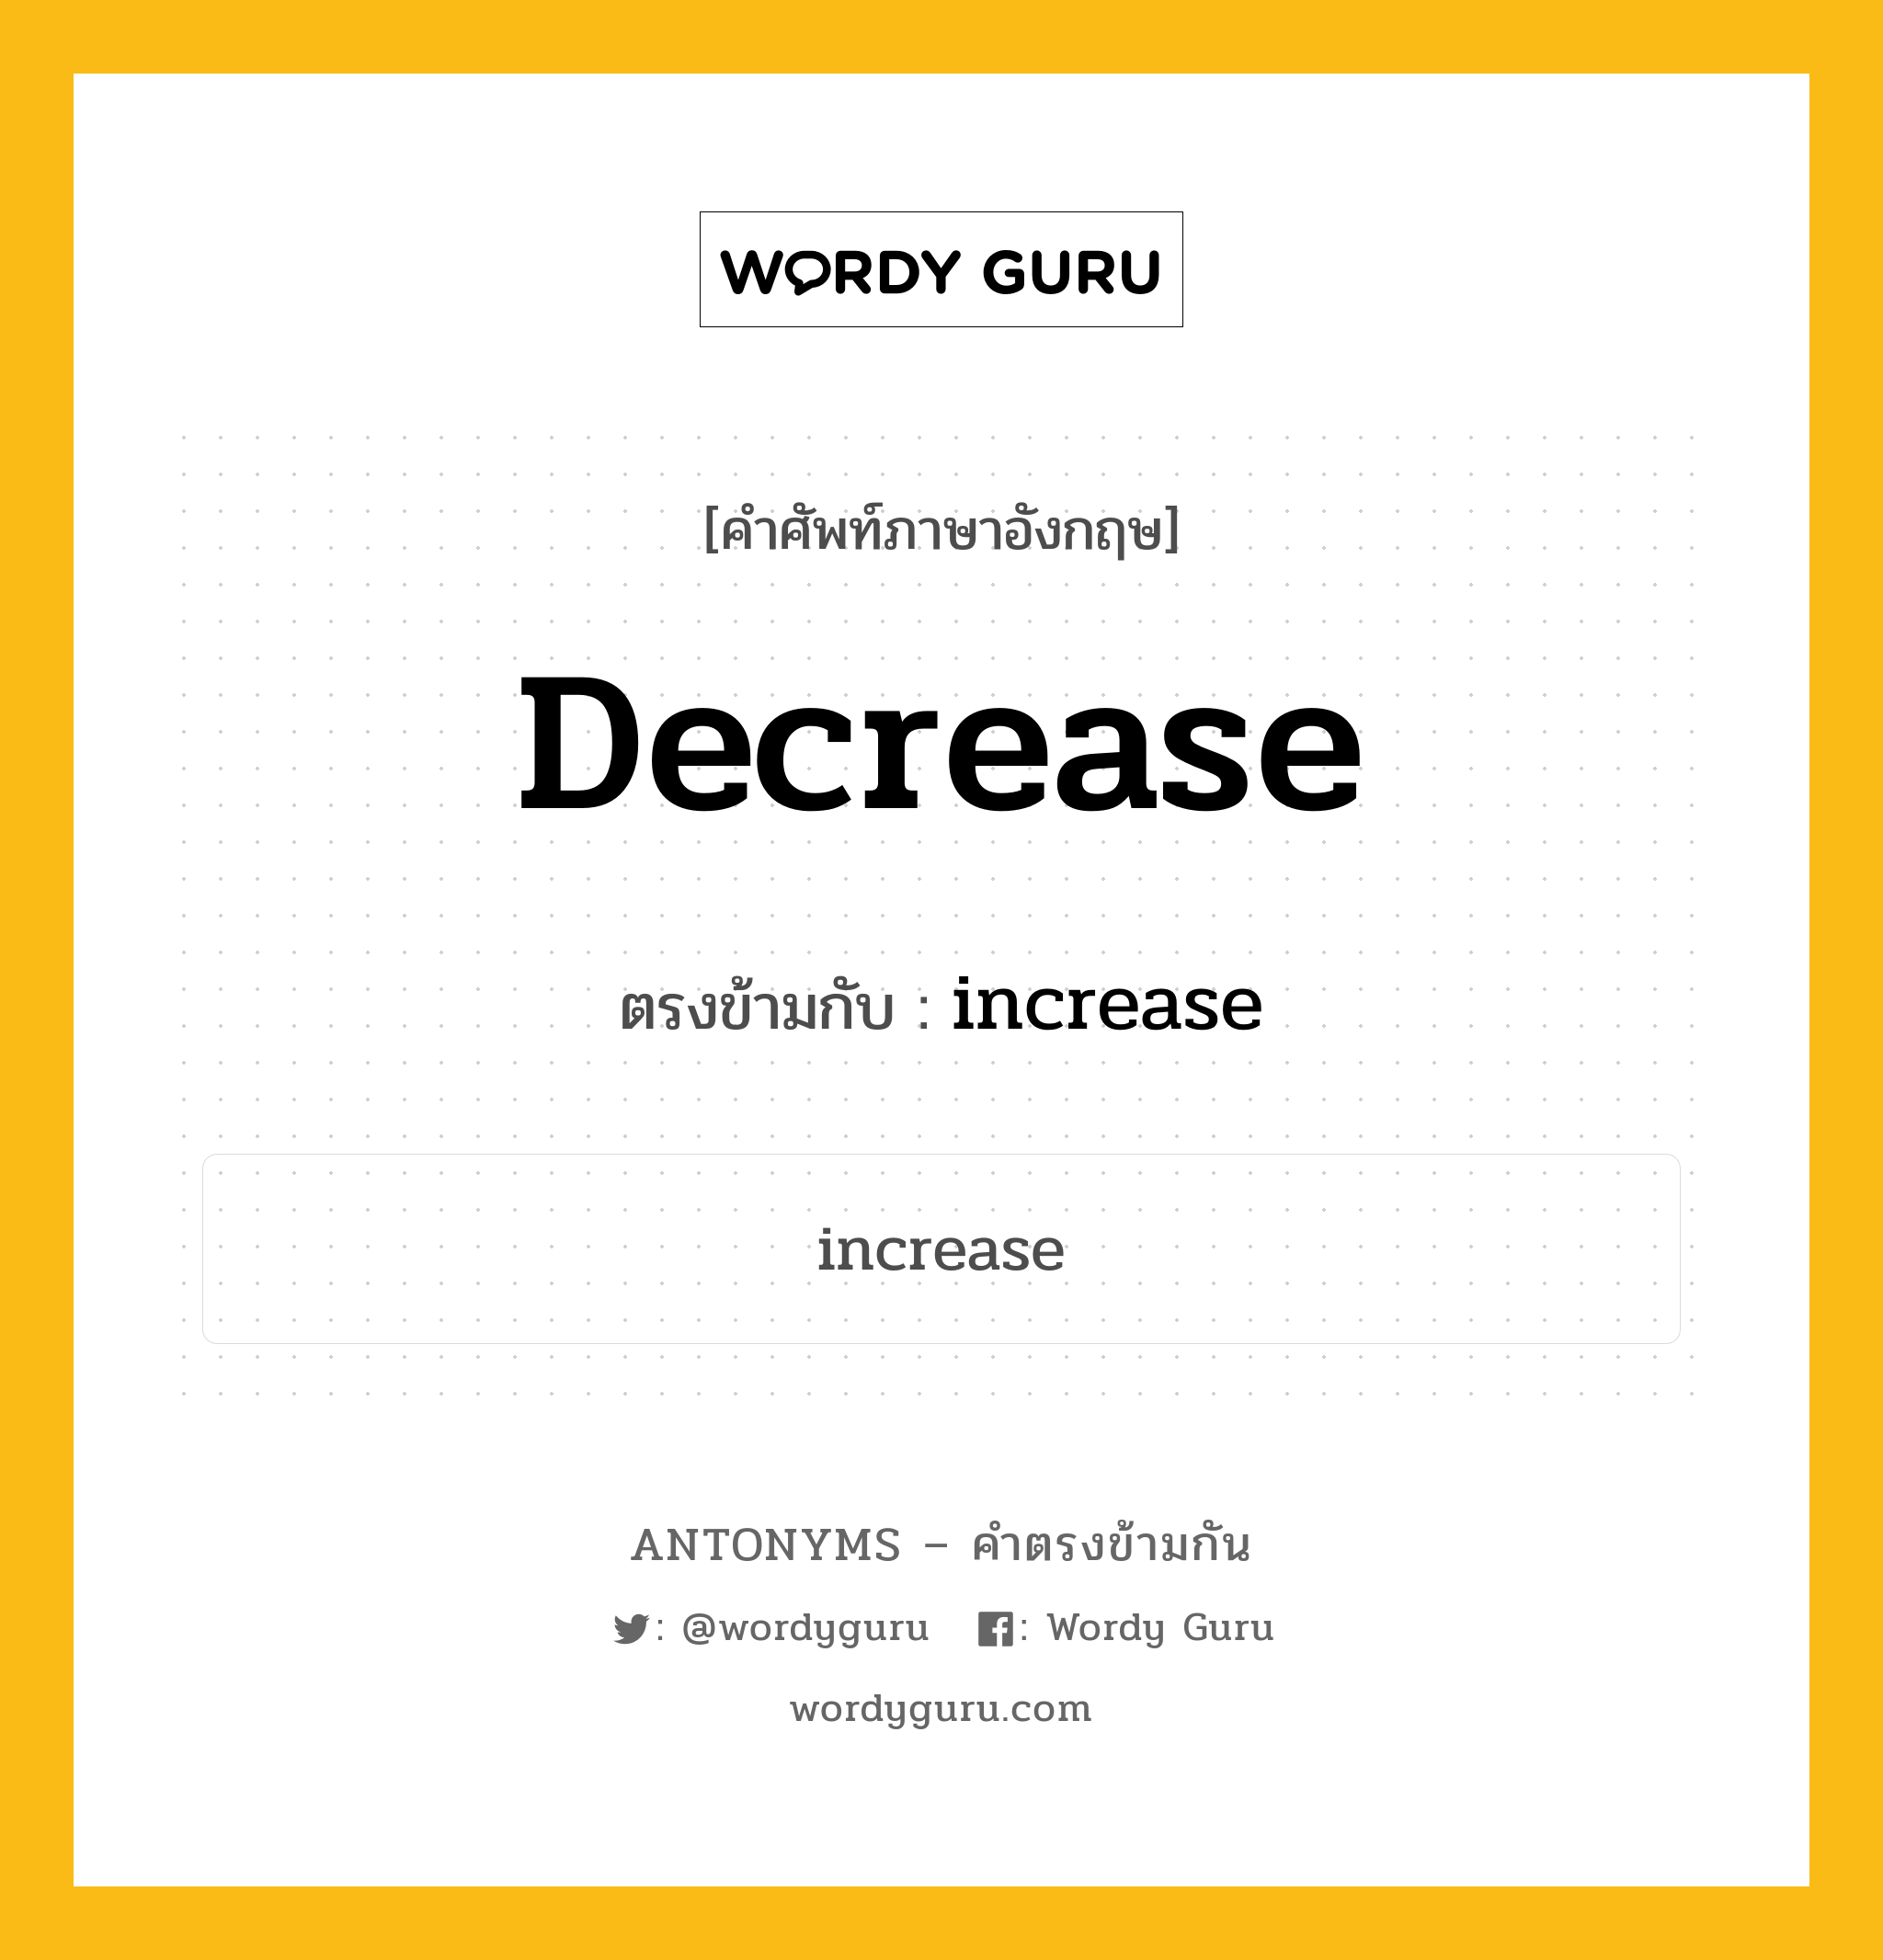 decrease เป็นคำตรงข้ามกับคำไหนบ้าง?, คำศัพท์ภาษาอังกฤษ decrease ตรงข้ามกับ increase หมวด increase